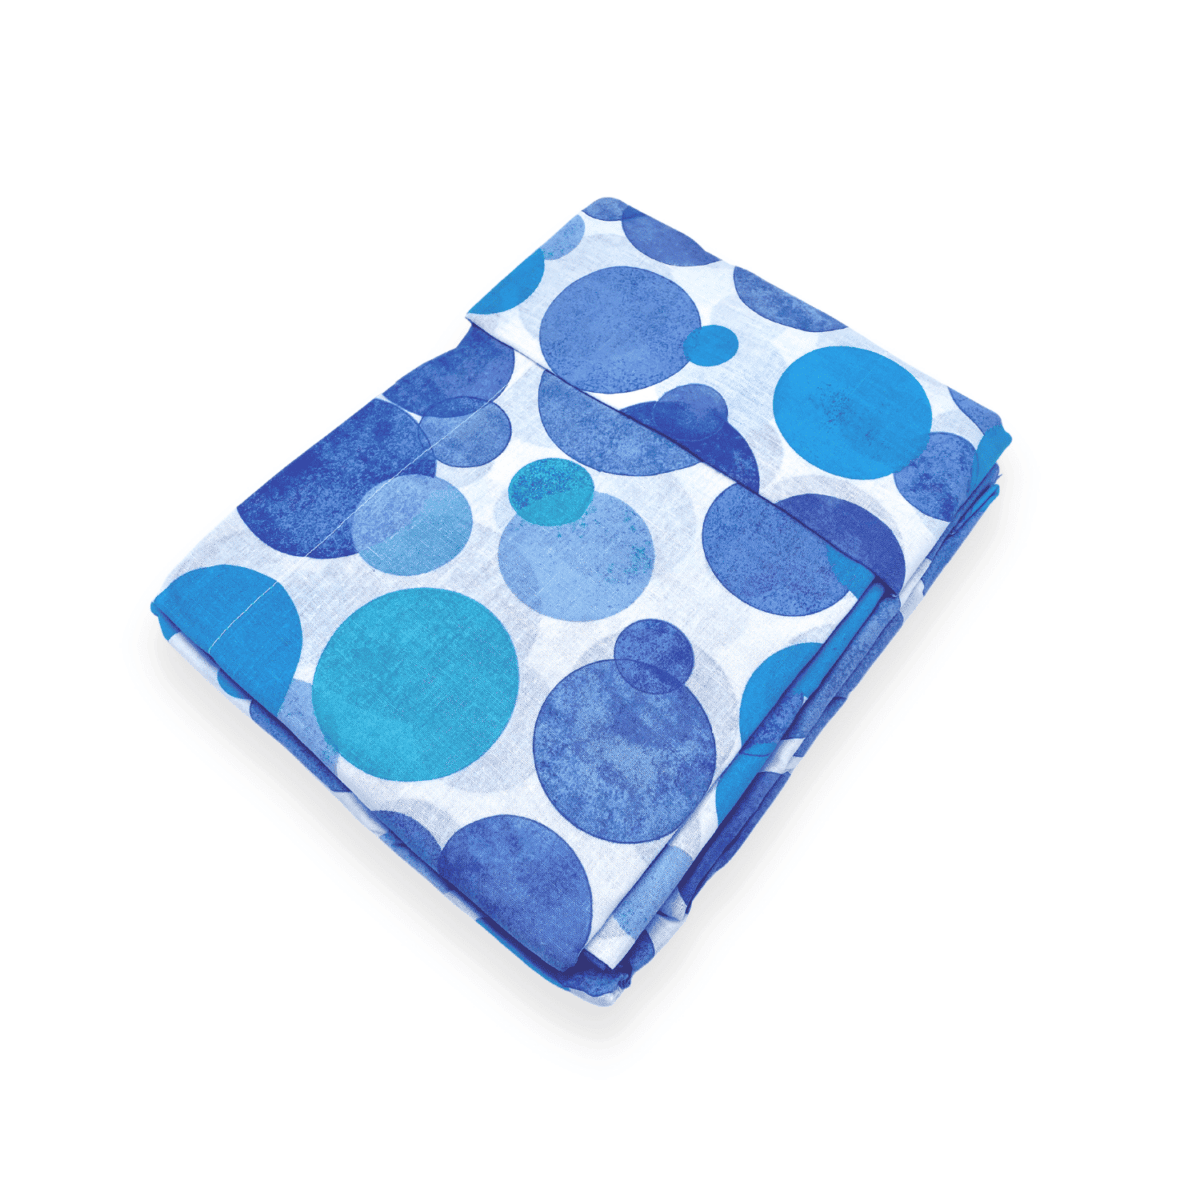 colorado-azzurro-pauline-completo-lenzuola-cotone-turchese-blu-acqua-bianco-fold